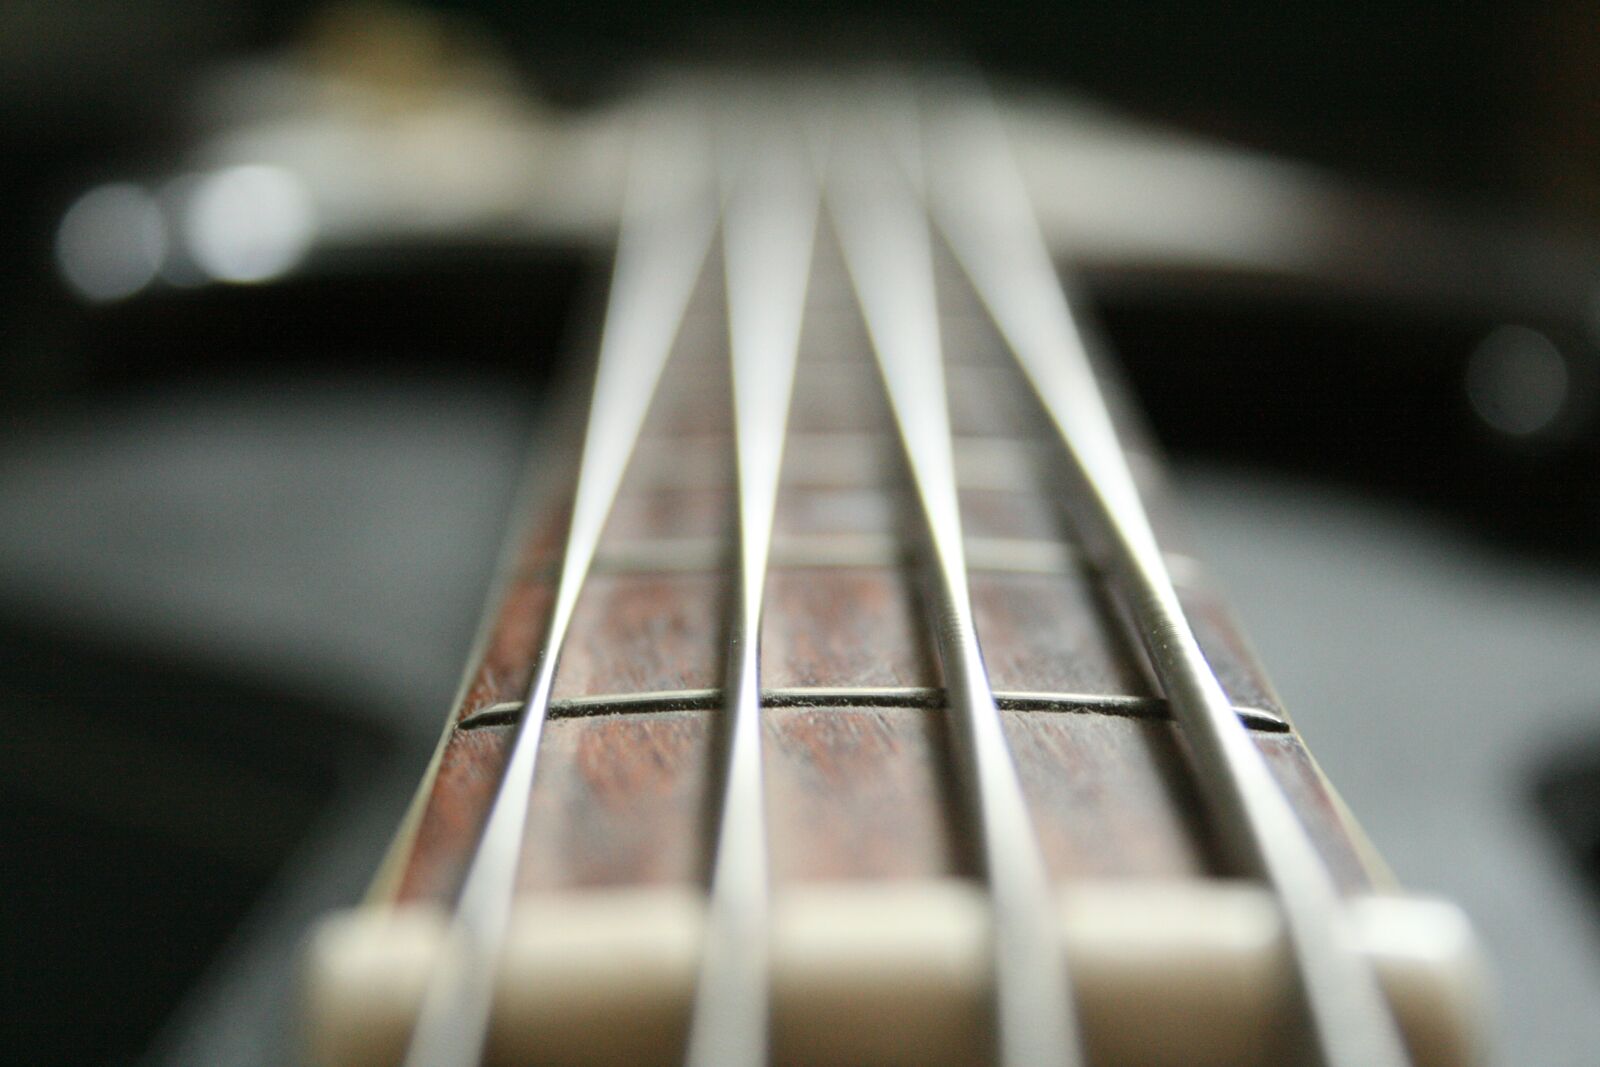 Canon EOS 400D (EOS Digital Rebel XTi / EOS Kiss Digital X) sample photo. Bass, guitar, music photography